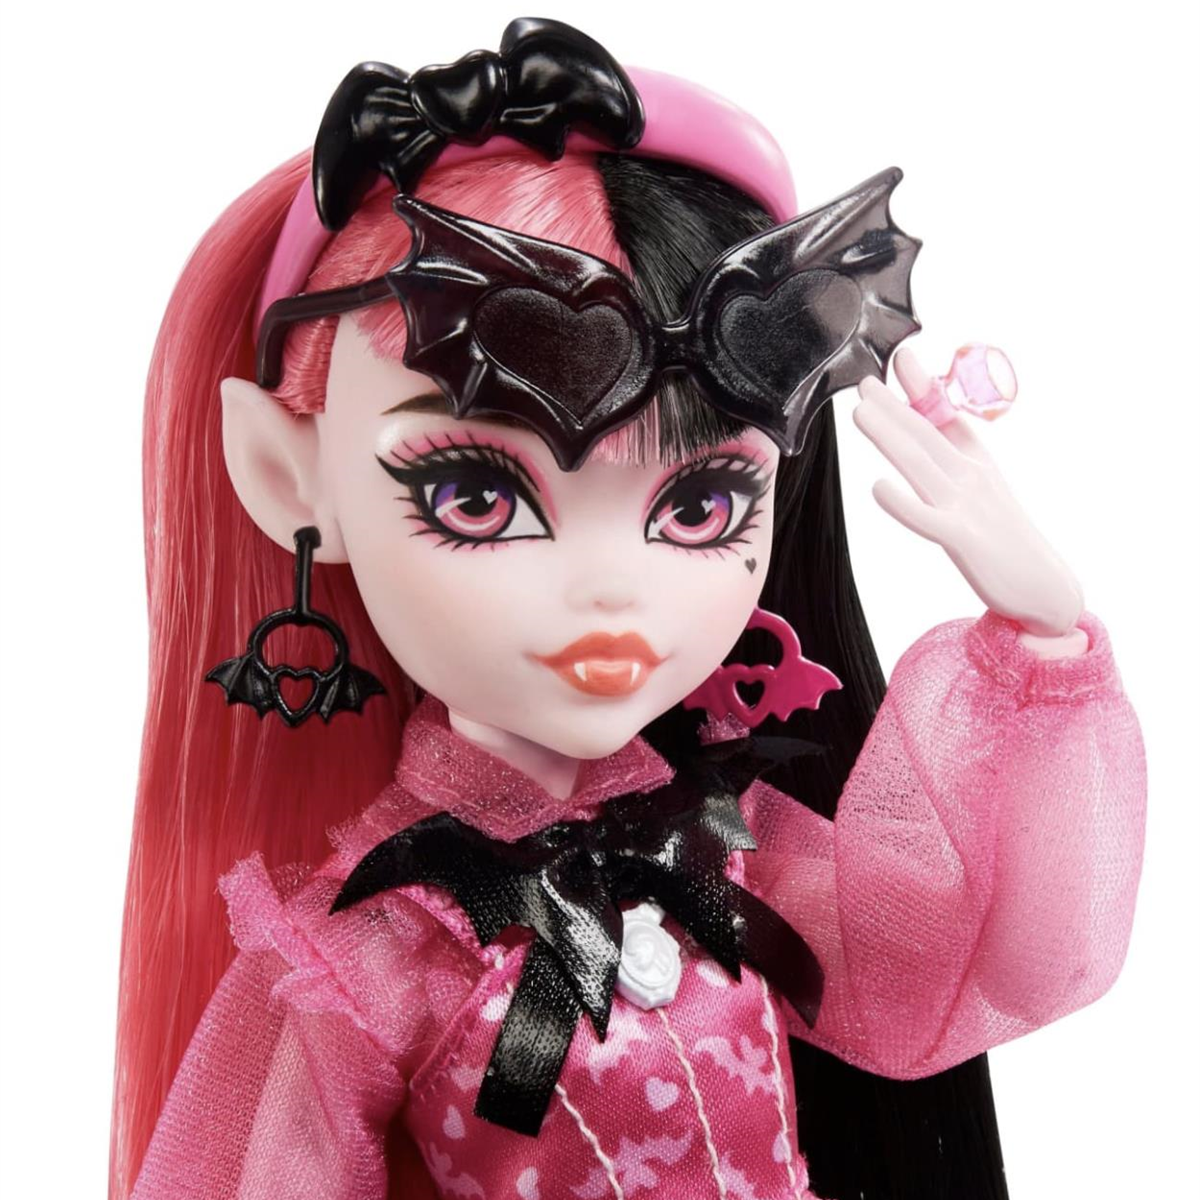 Monster High Ana Karakter Bebekler Draculaura HPD53-HHK51 | Toysall